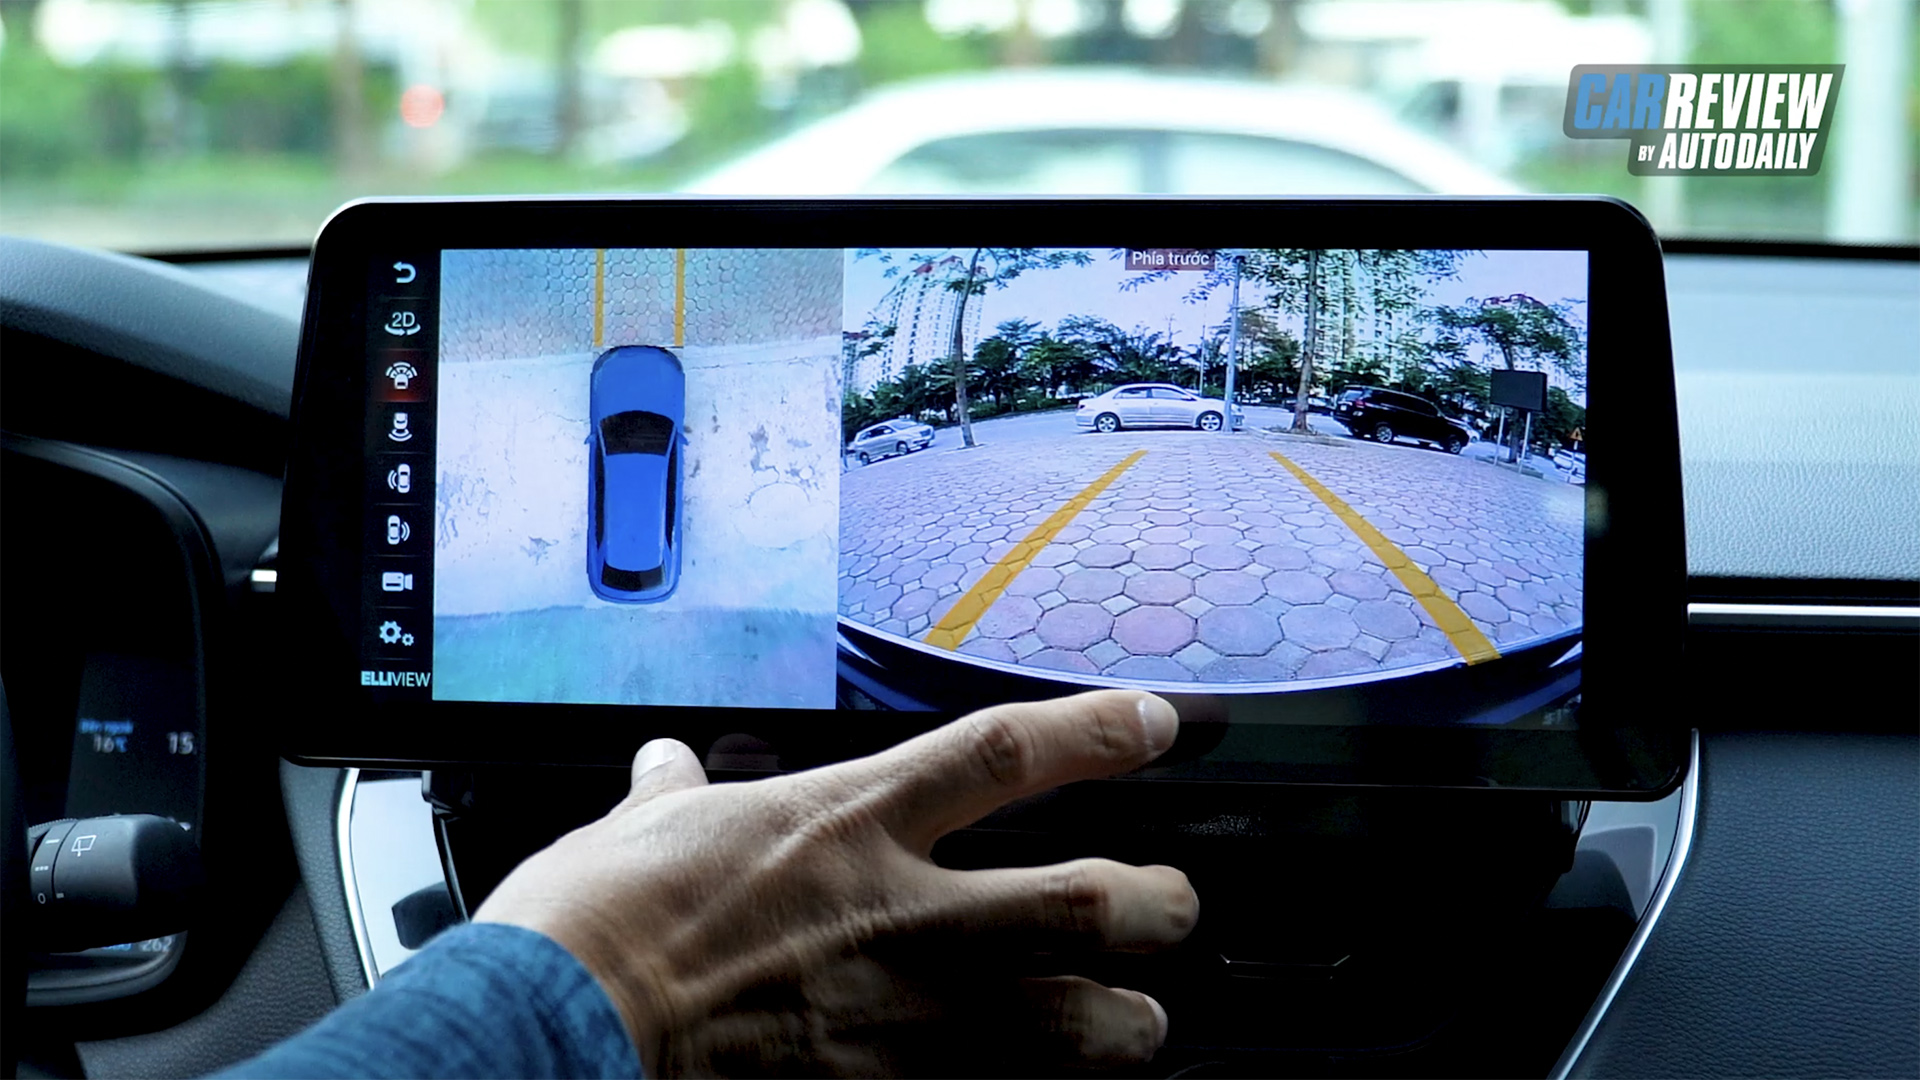 Trải nghiệm màn hình Elliview Q4M - Giải pháp thông minh và an toàn hơn cho xe của bạn